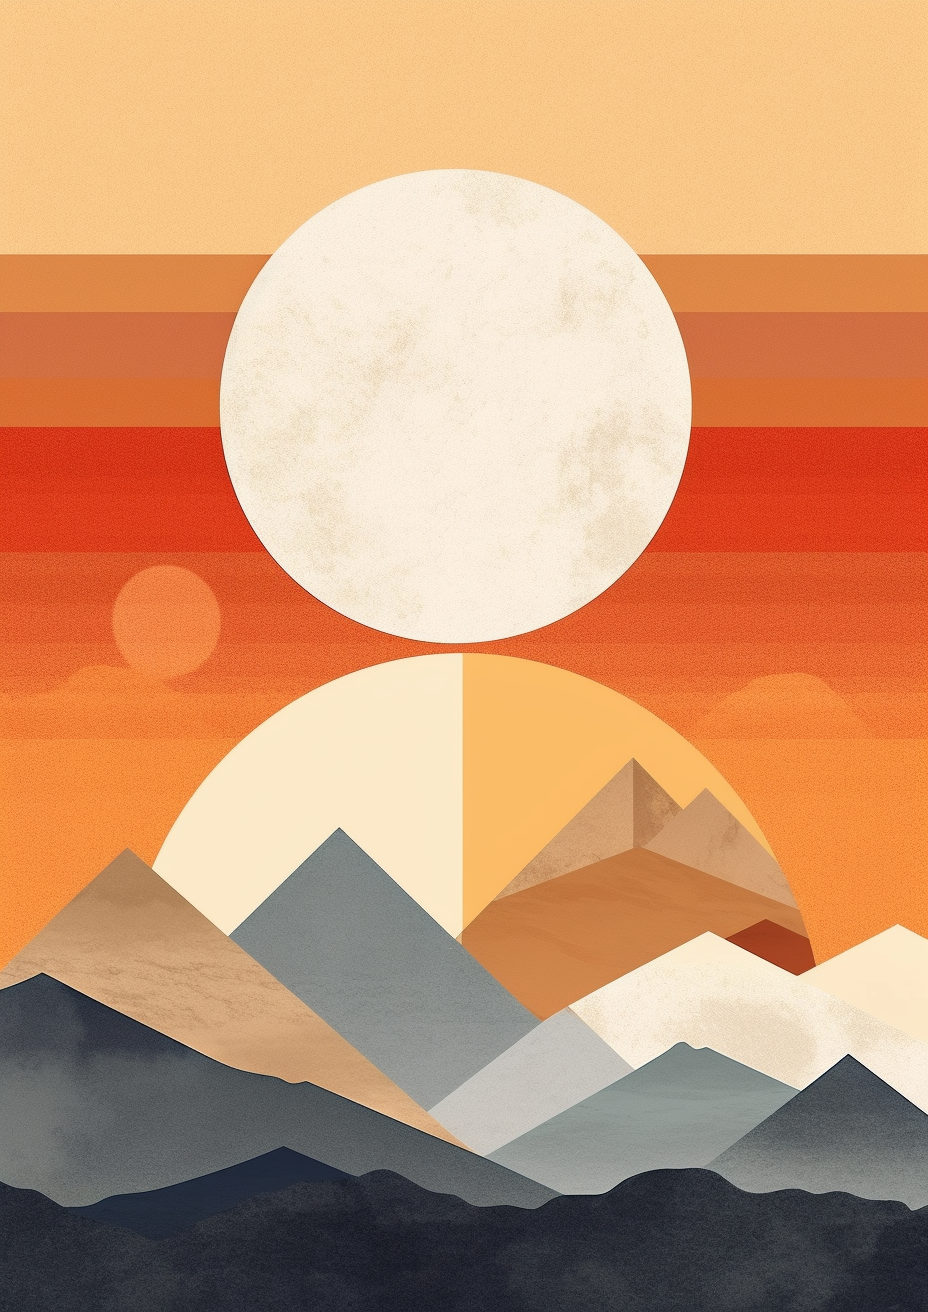 Artwork | Illustration "Sunset" | LED Bild